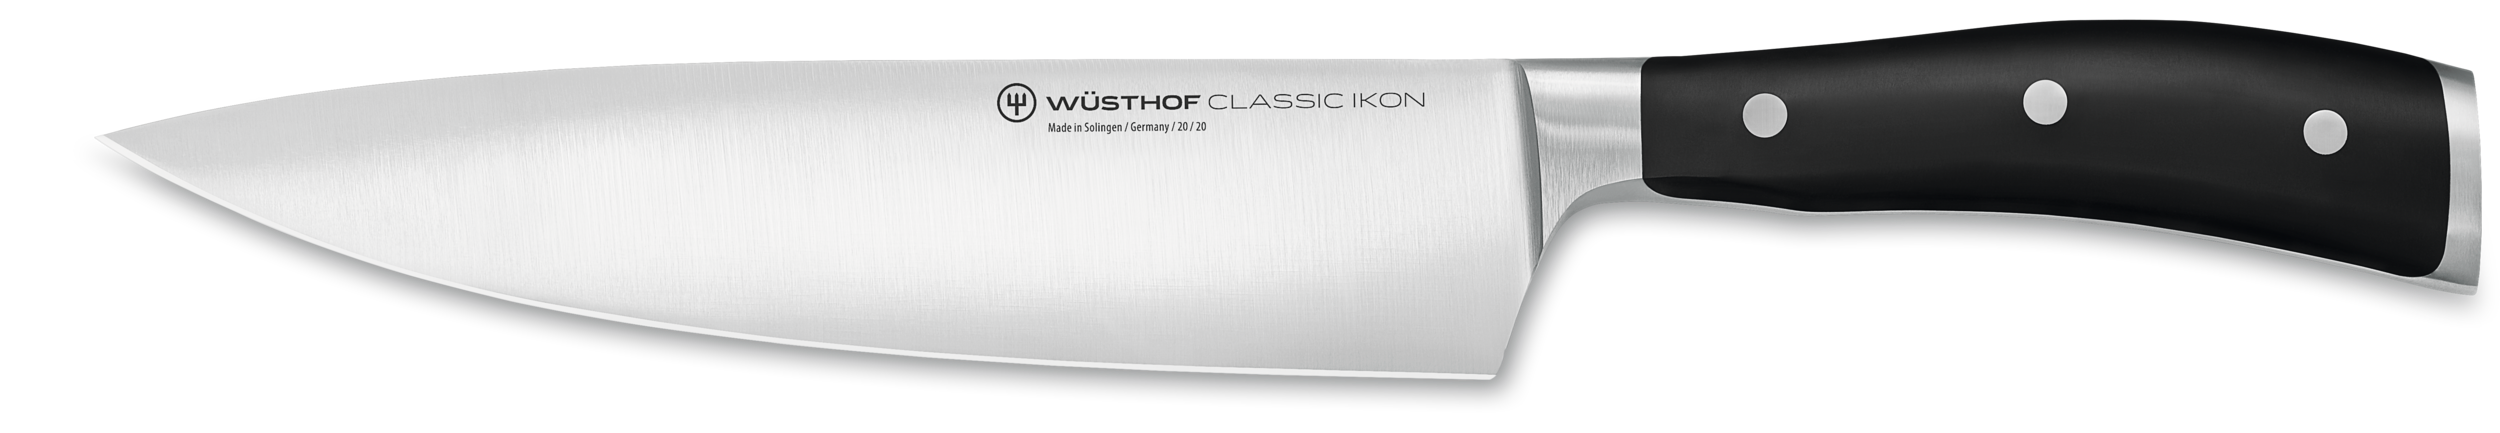 Wüsthof Classic Ikon 15-Piece Acacia Knife Block Set + Reviews